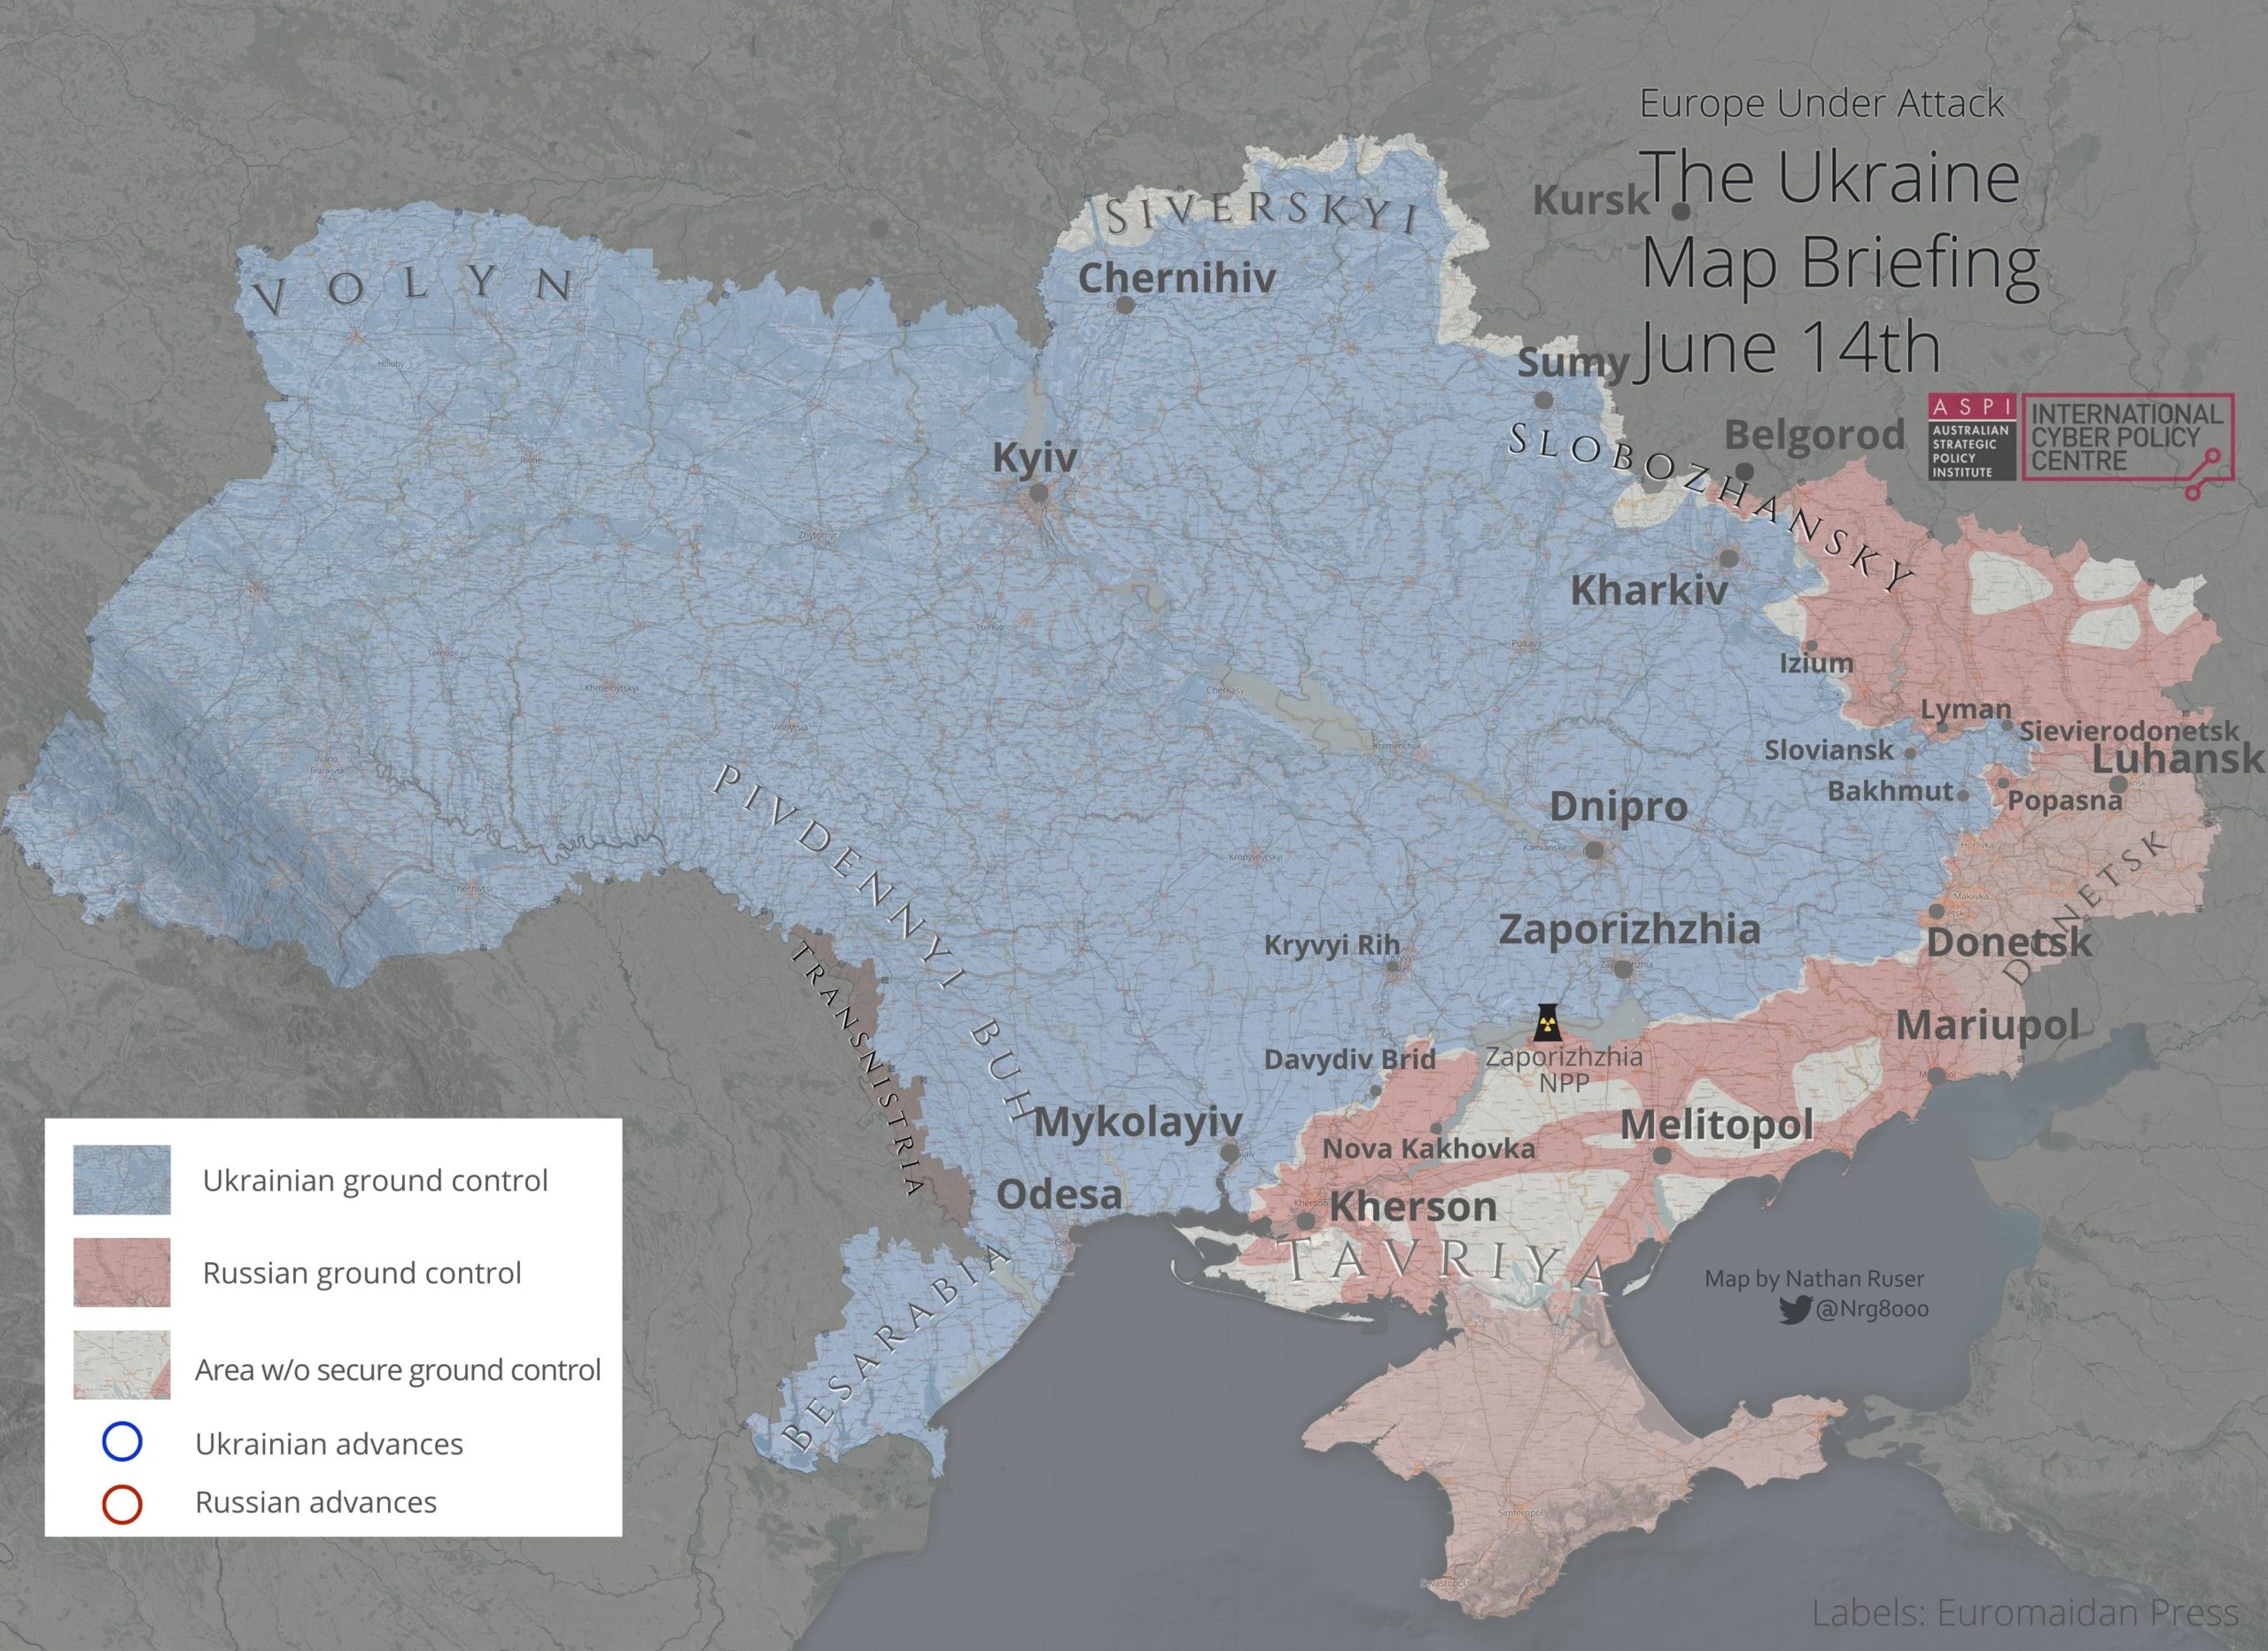 Ukraine's counteroffensive stalled in KhersonUkraine's counteroffensive stalled in Kherson Oblast Oblast 